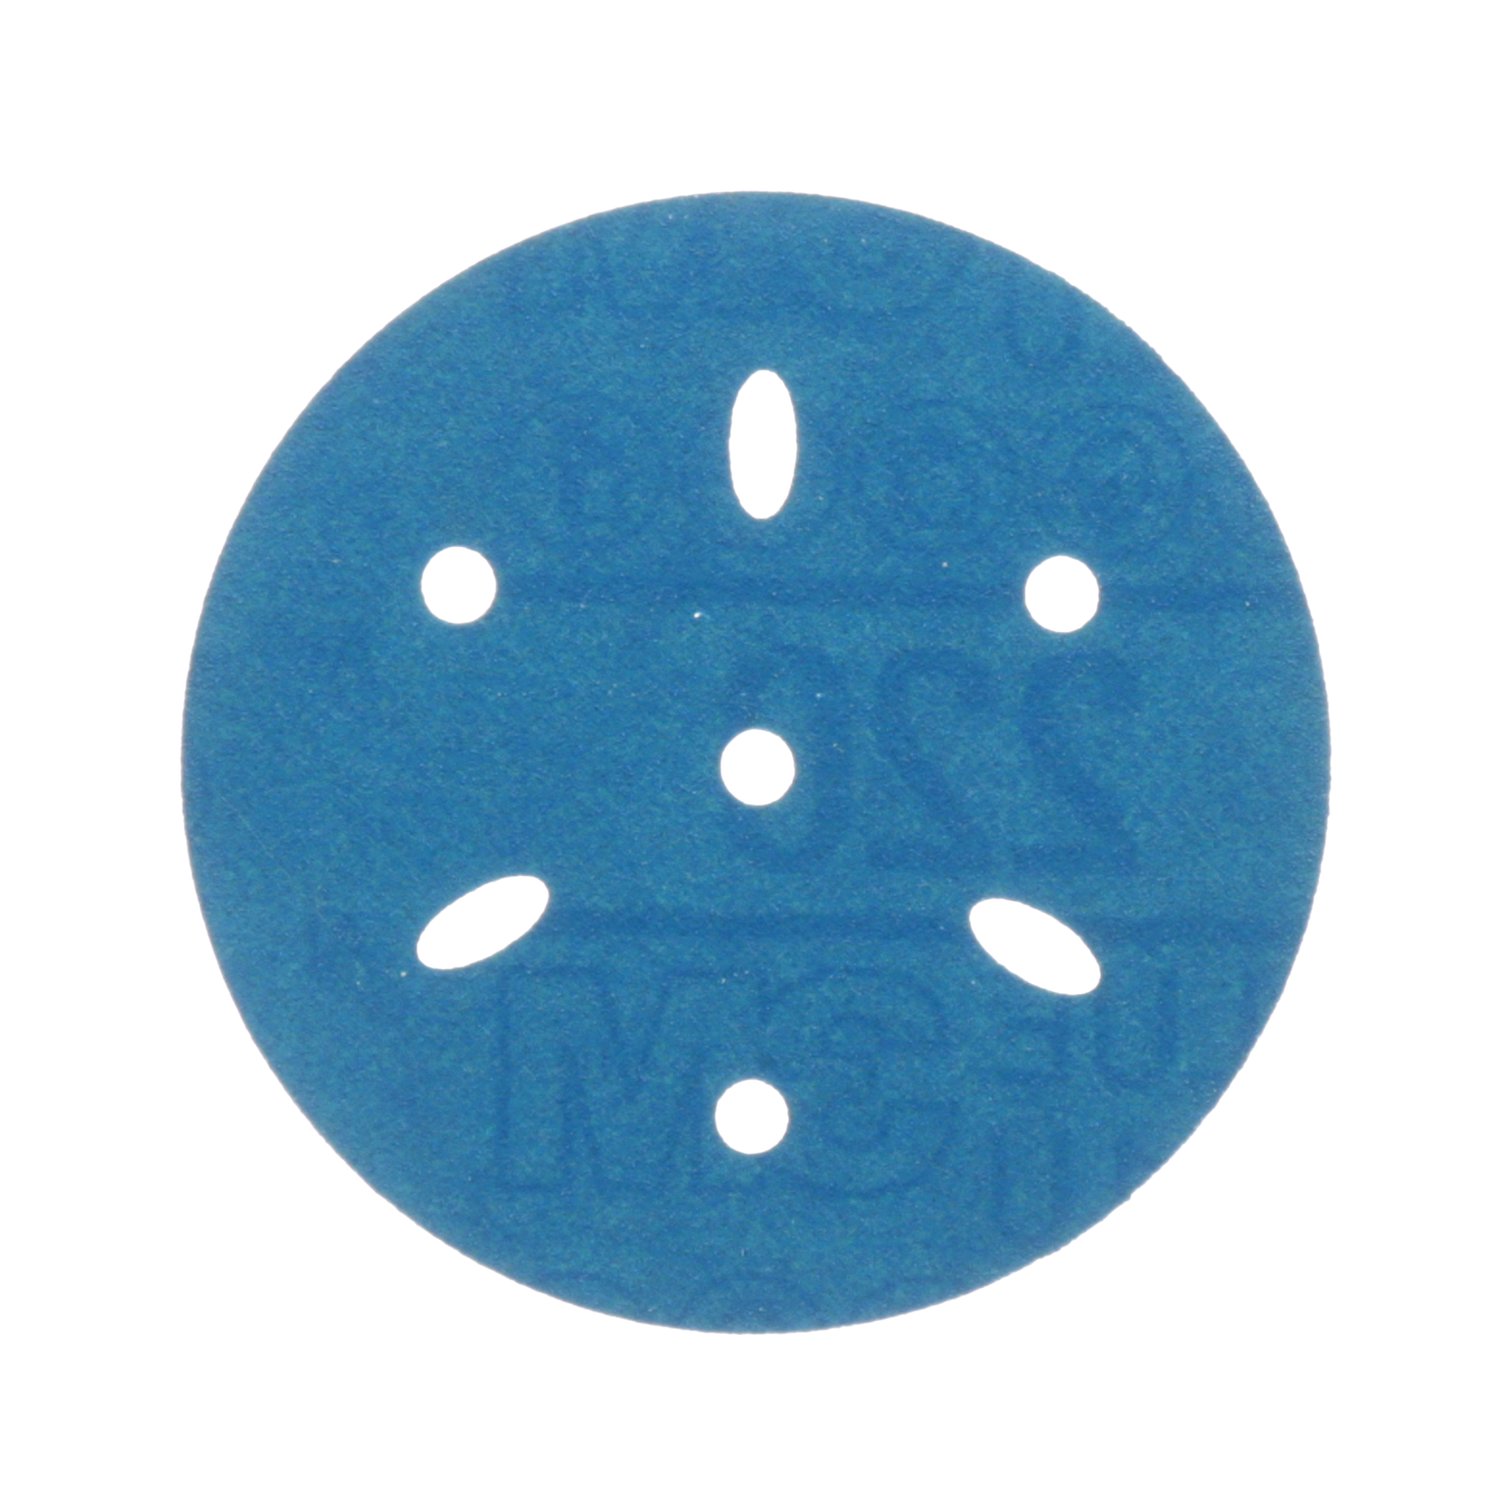 7100091345 - 3M Hookit Blue Abrasive Disc Multi-hole, 36147, 3 in, 220 grade, 50
discs per carton, 4 cartons per case